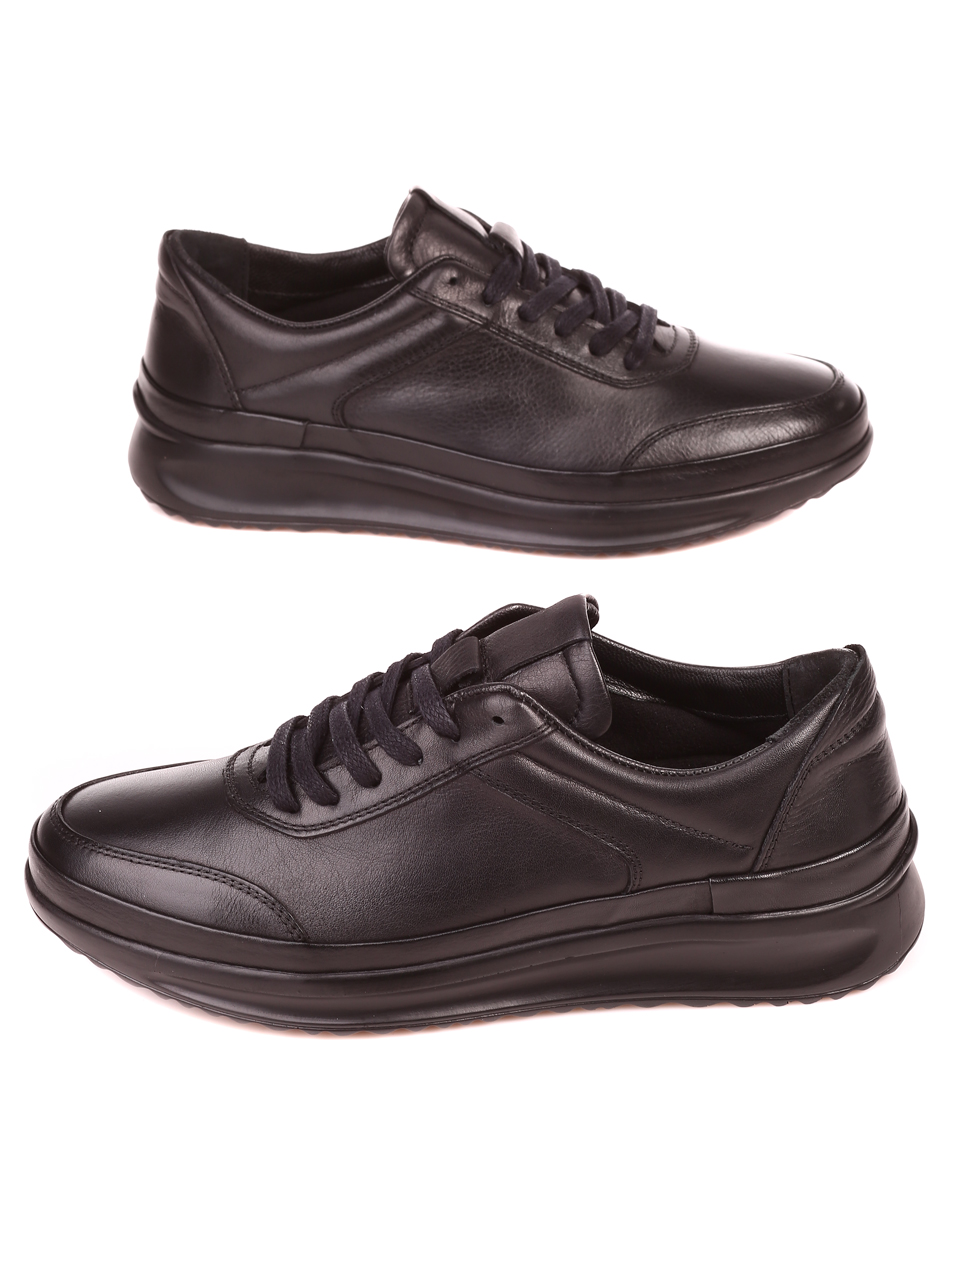 Ежедневни мъжки обувки от естествена кожа 7AT-21849 black